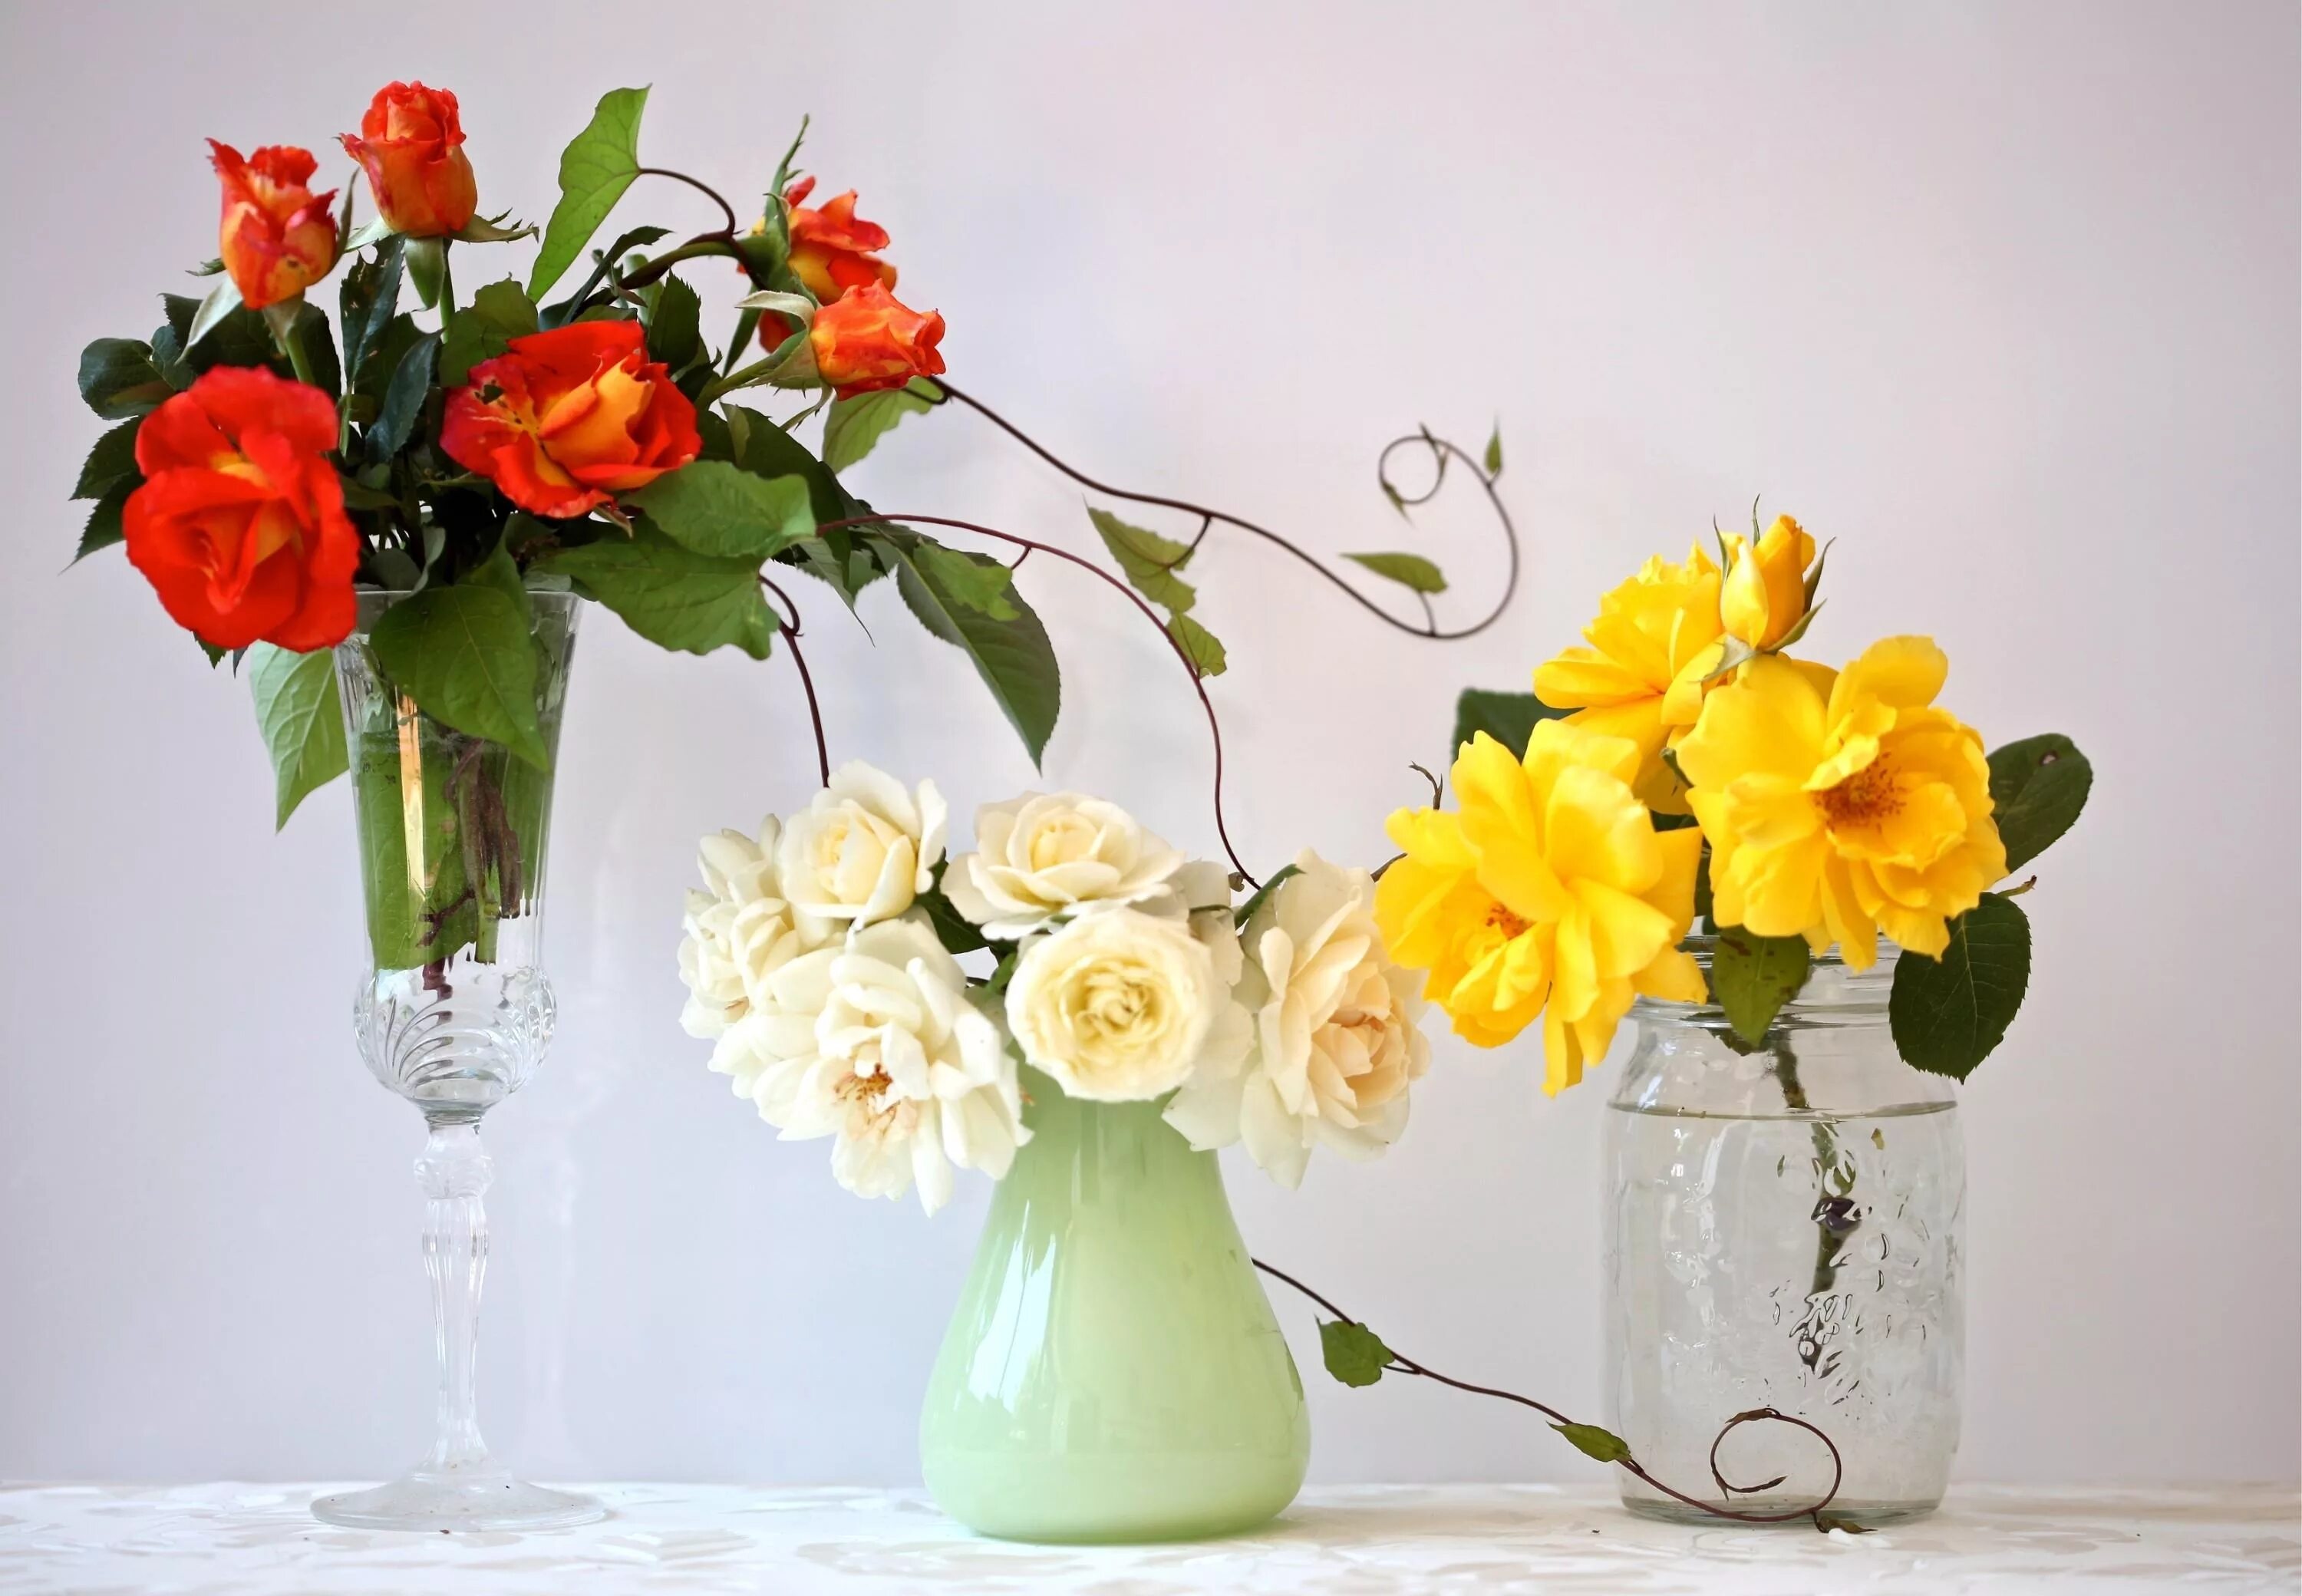 Цветы в вазе. Шикарные цветы в вазе. Красивый букет цветов в вазе. Цветочная композиция. Три розы в вазе